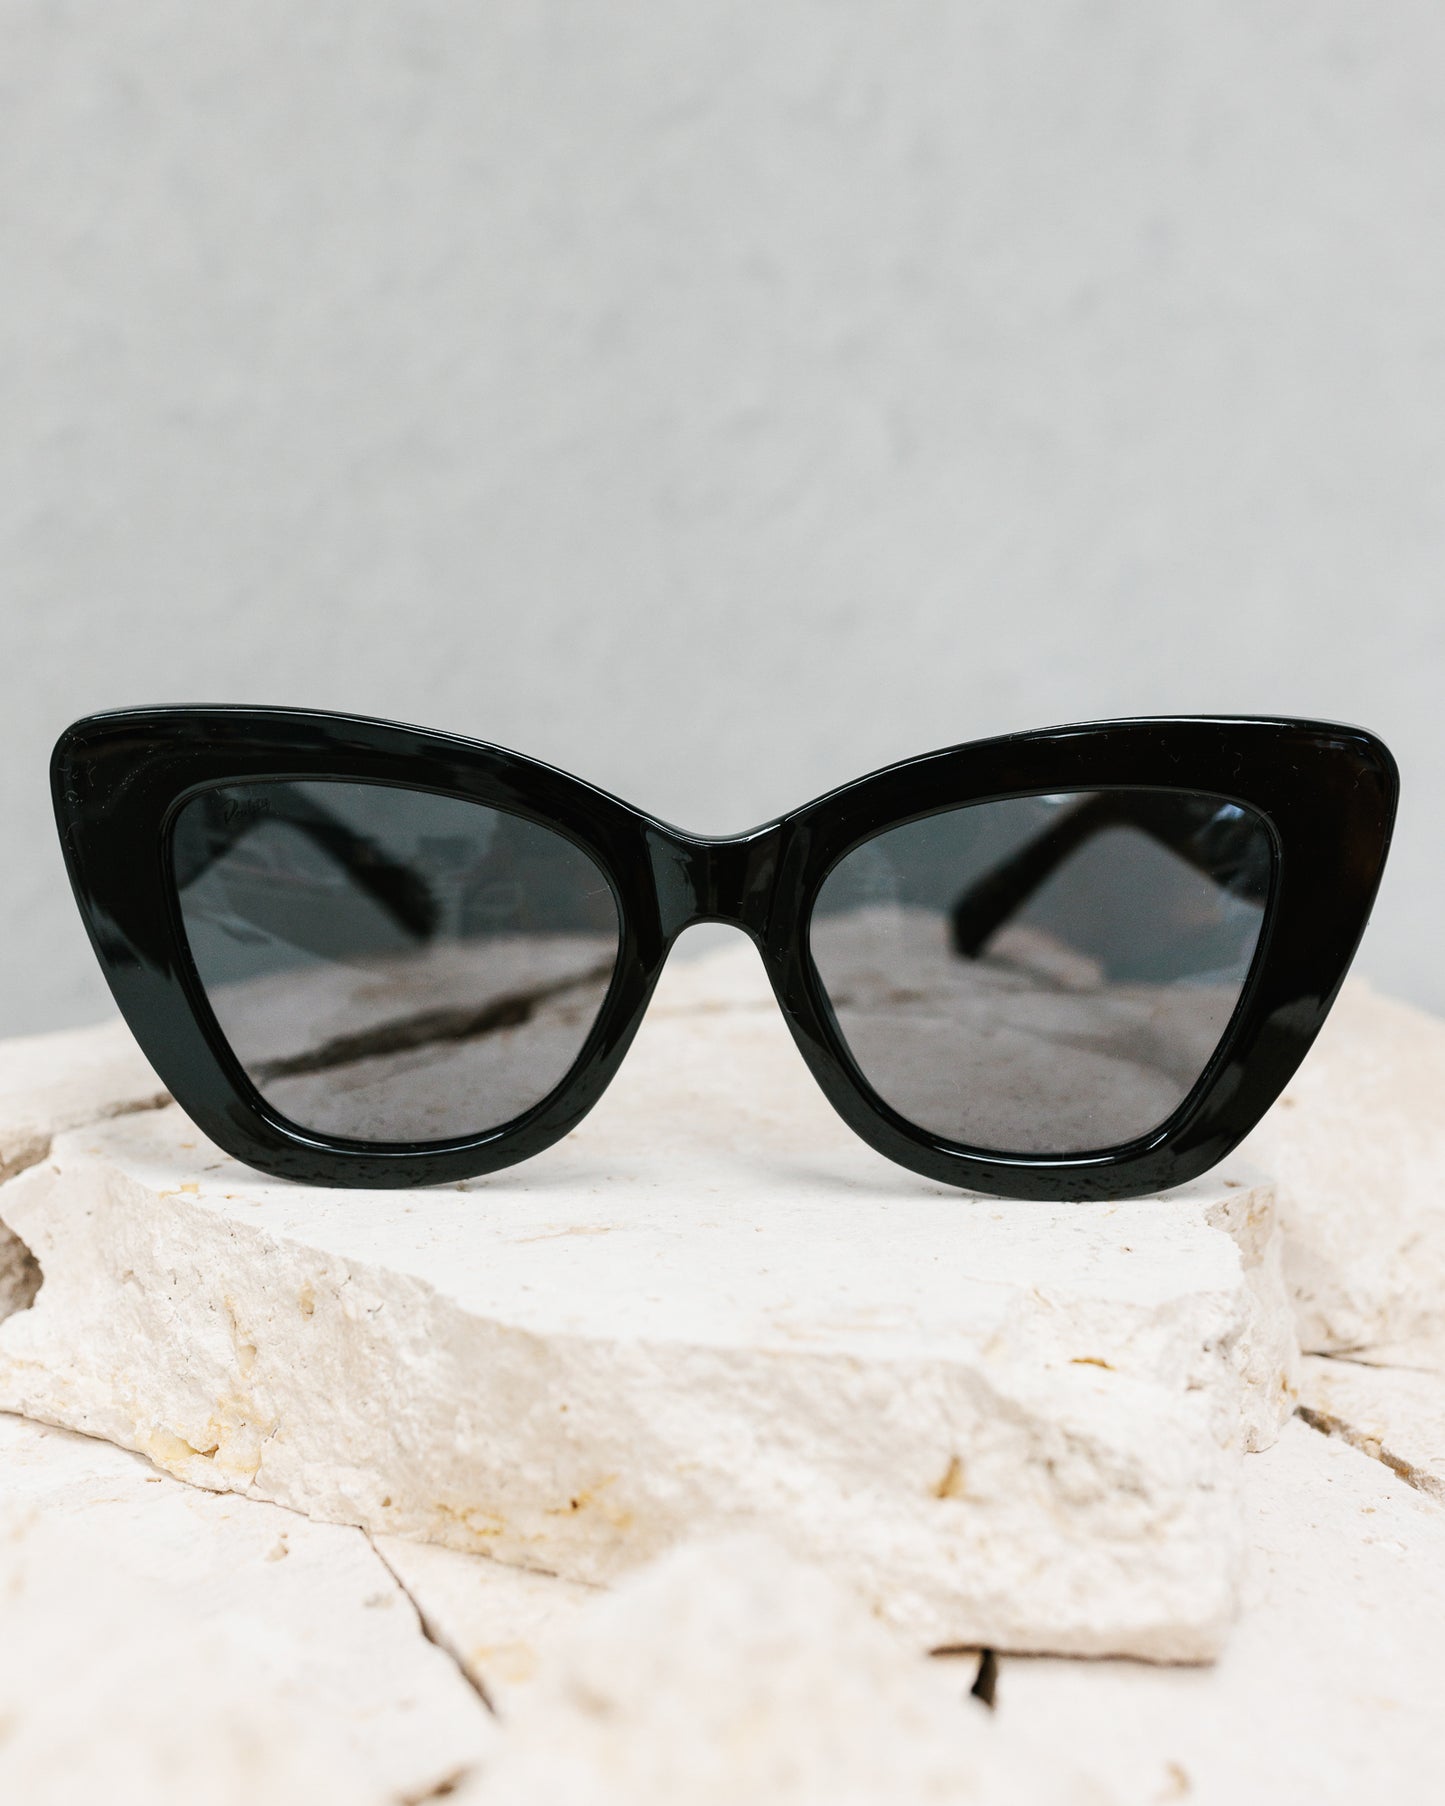 Mulholland Sunglasses - Black